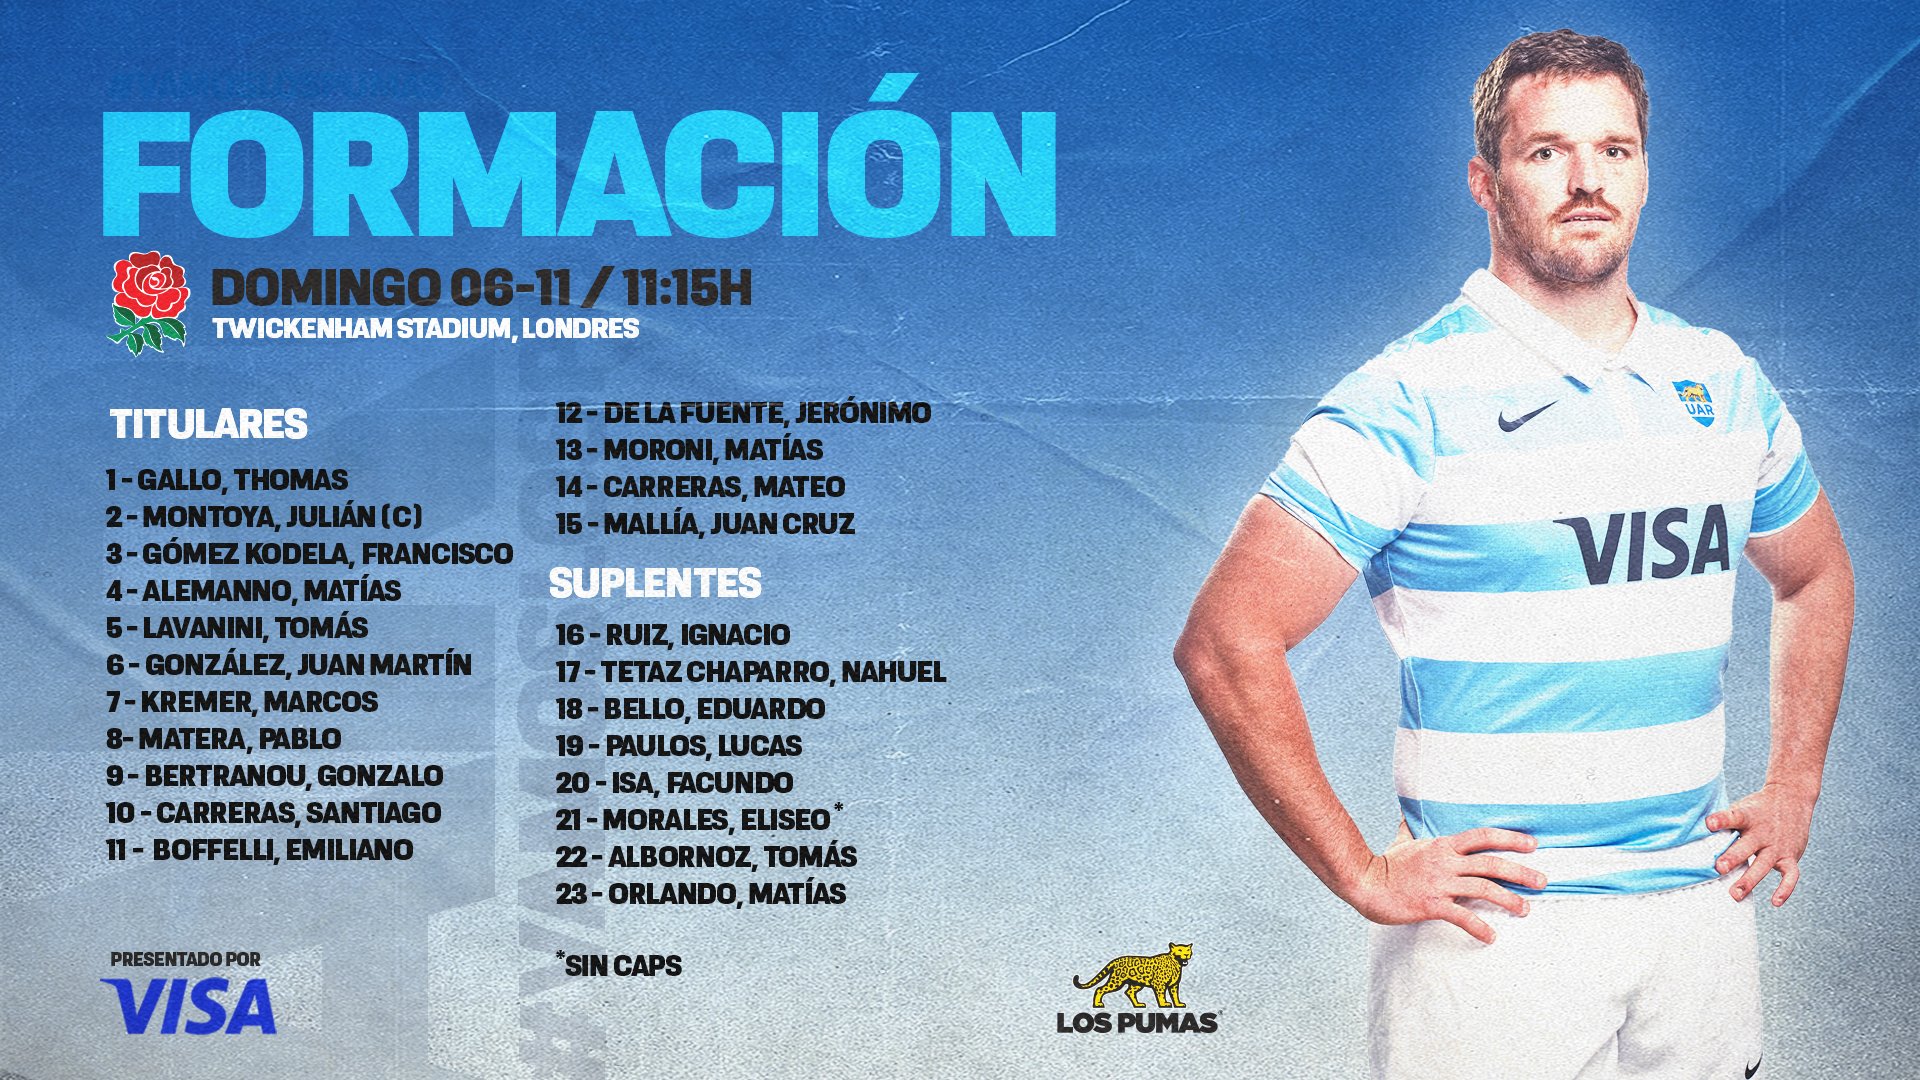 Los Pumas on Twitter: primeros 23 Pumas de la gira! 🐆 Estos son los jugadores designados por Michael Cheika para enfrentar a @EnglandRugby. #VamosLosPumas https://t.co/De8HFze4ki" / Twitter